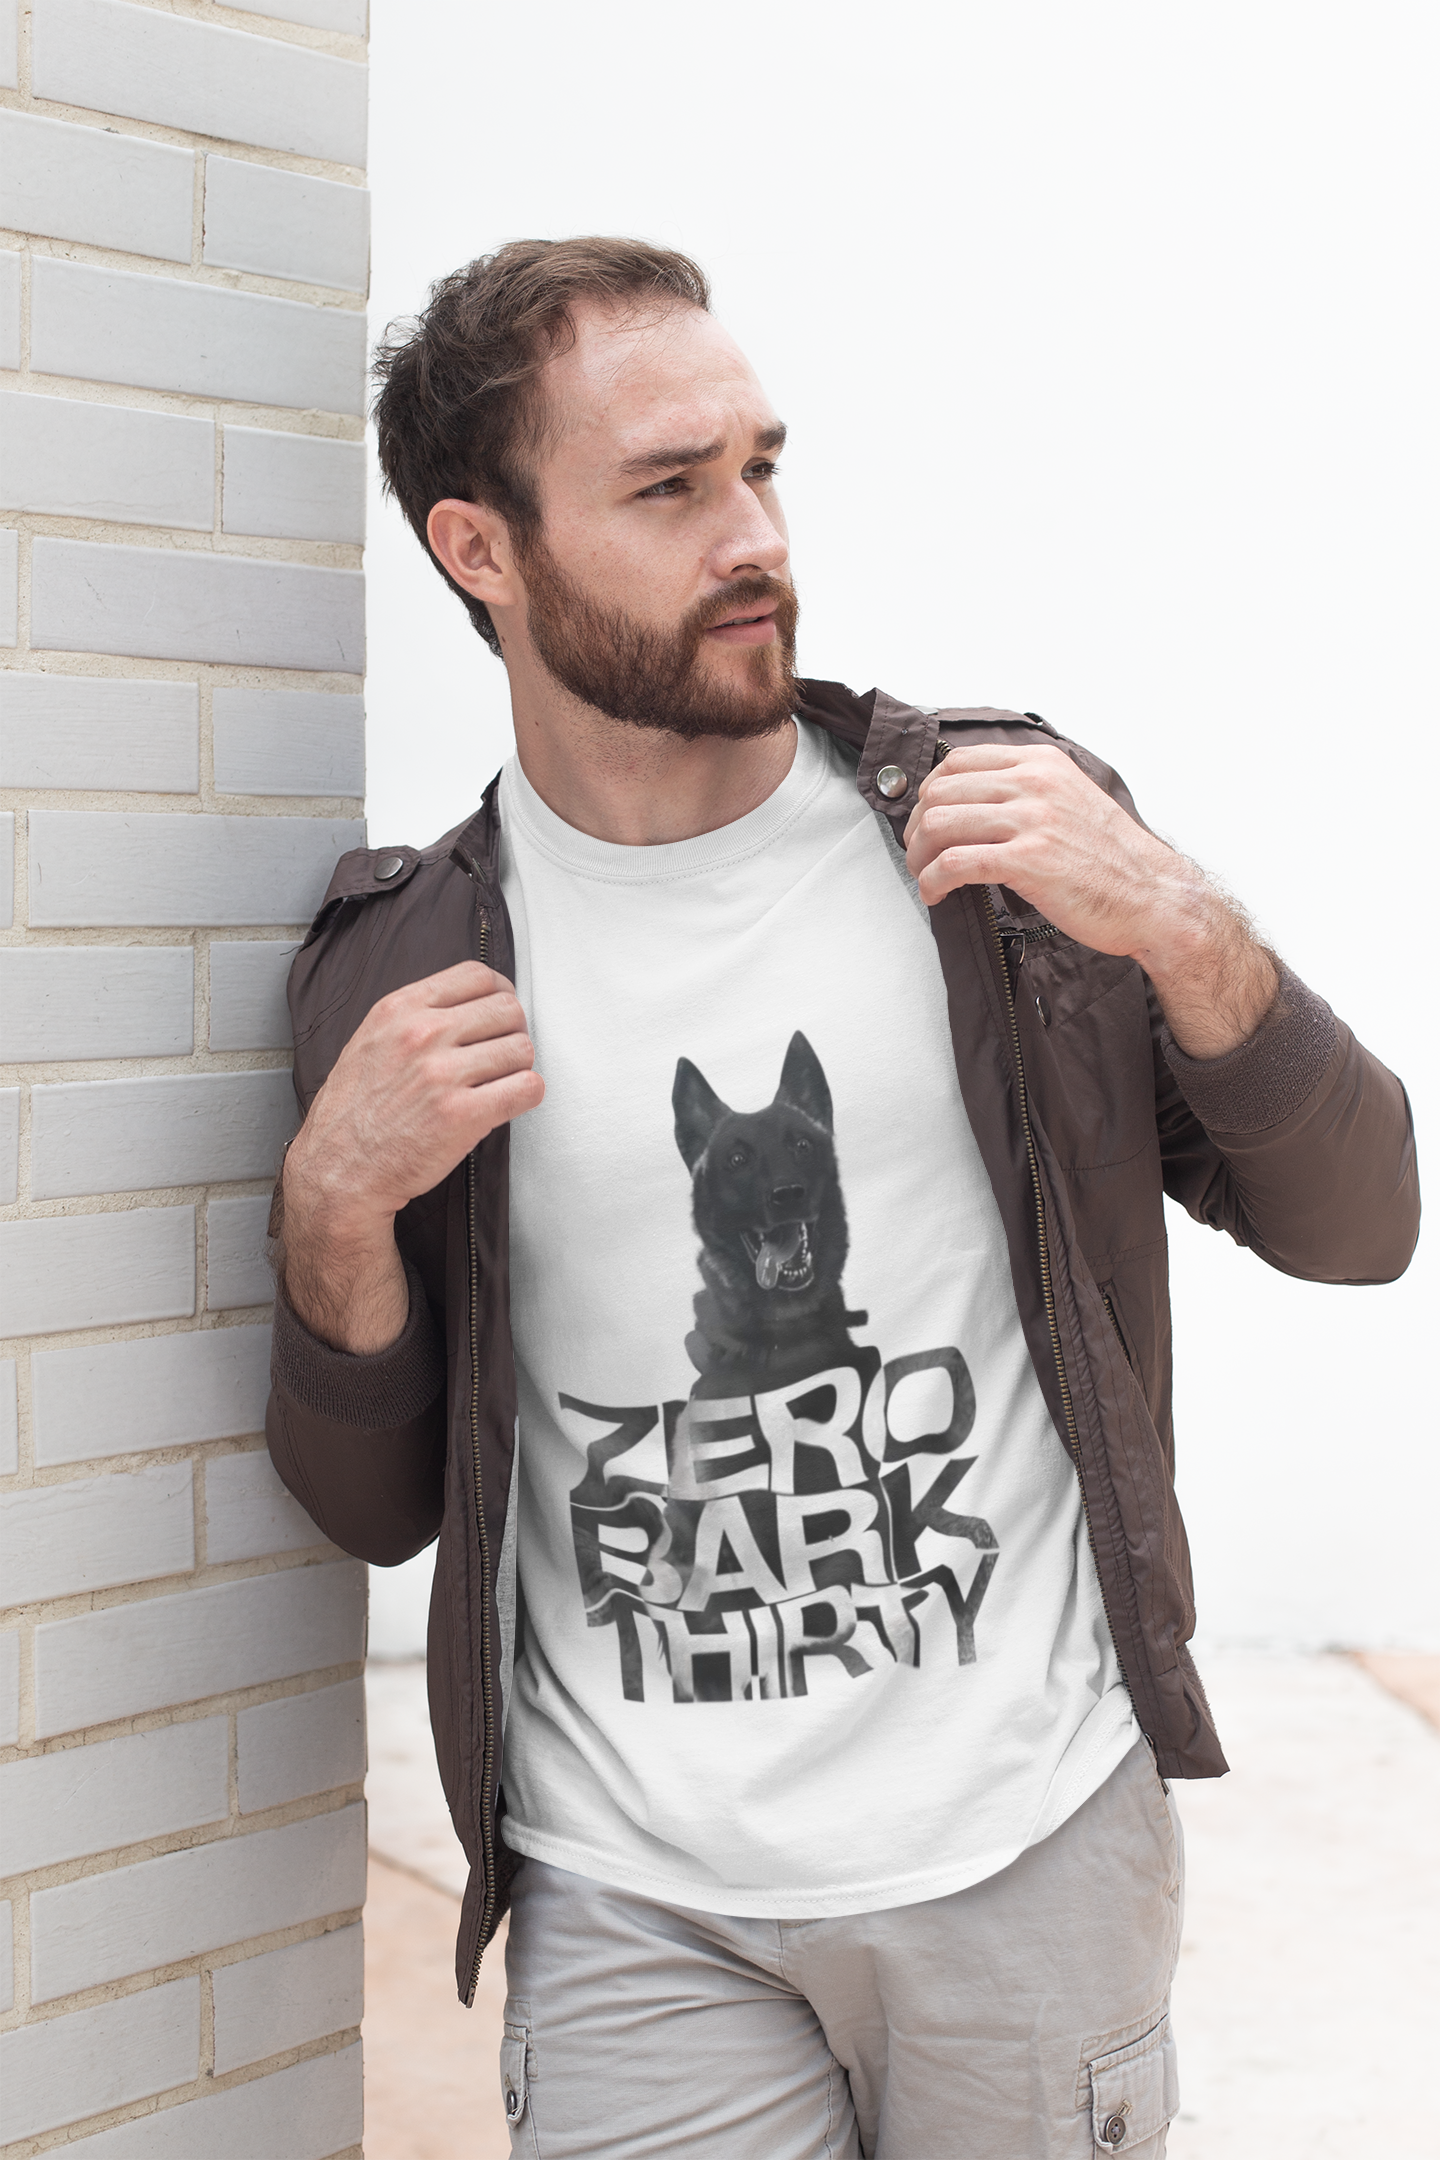 Hero dog zero bark thirty shirt, hoodie, tank top - tml